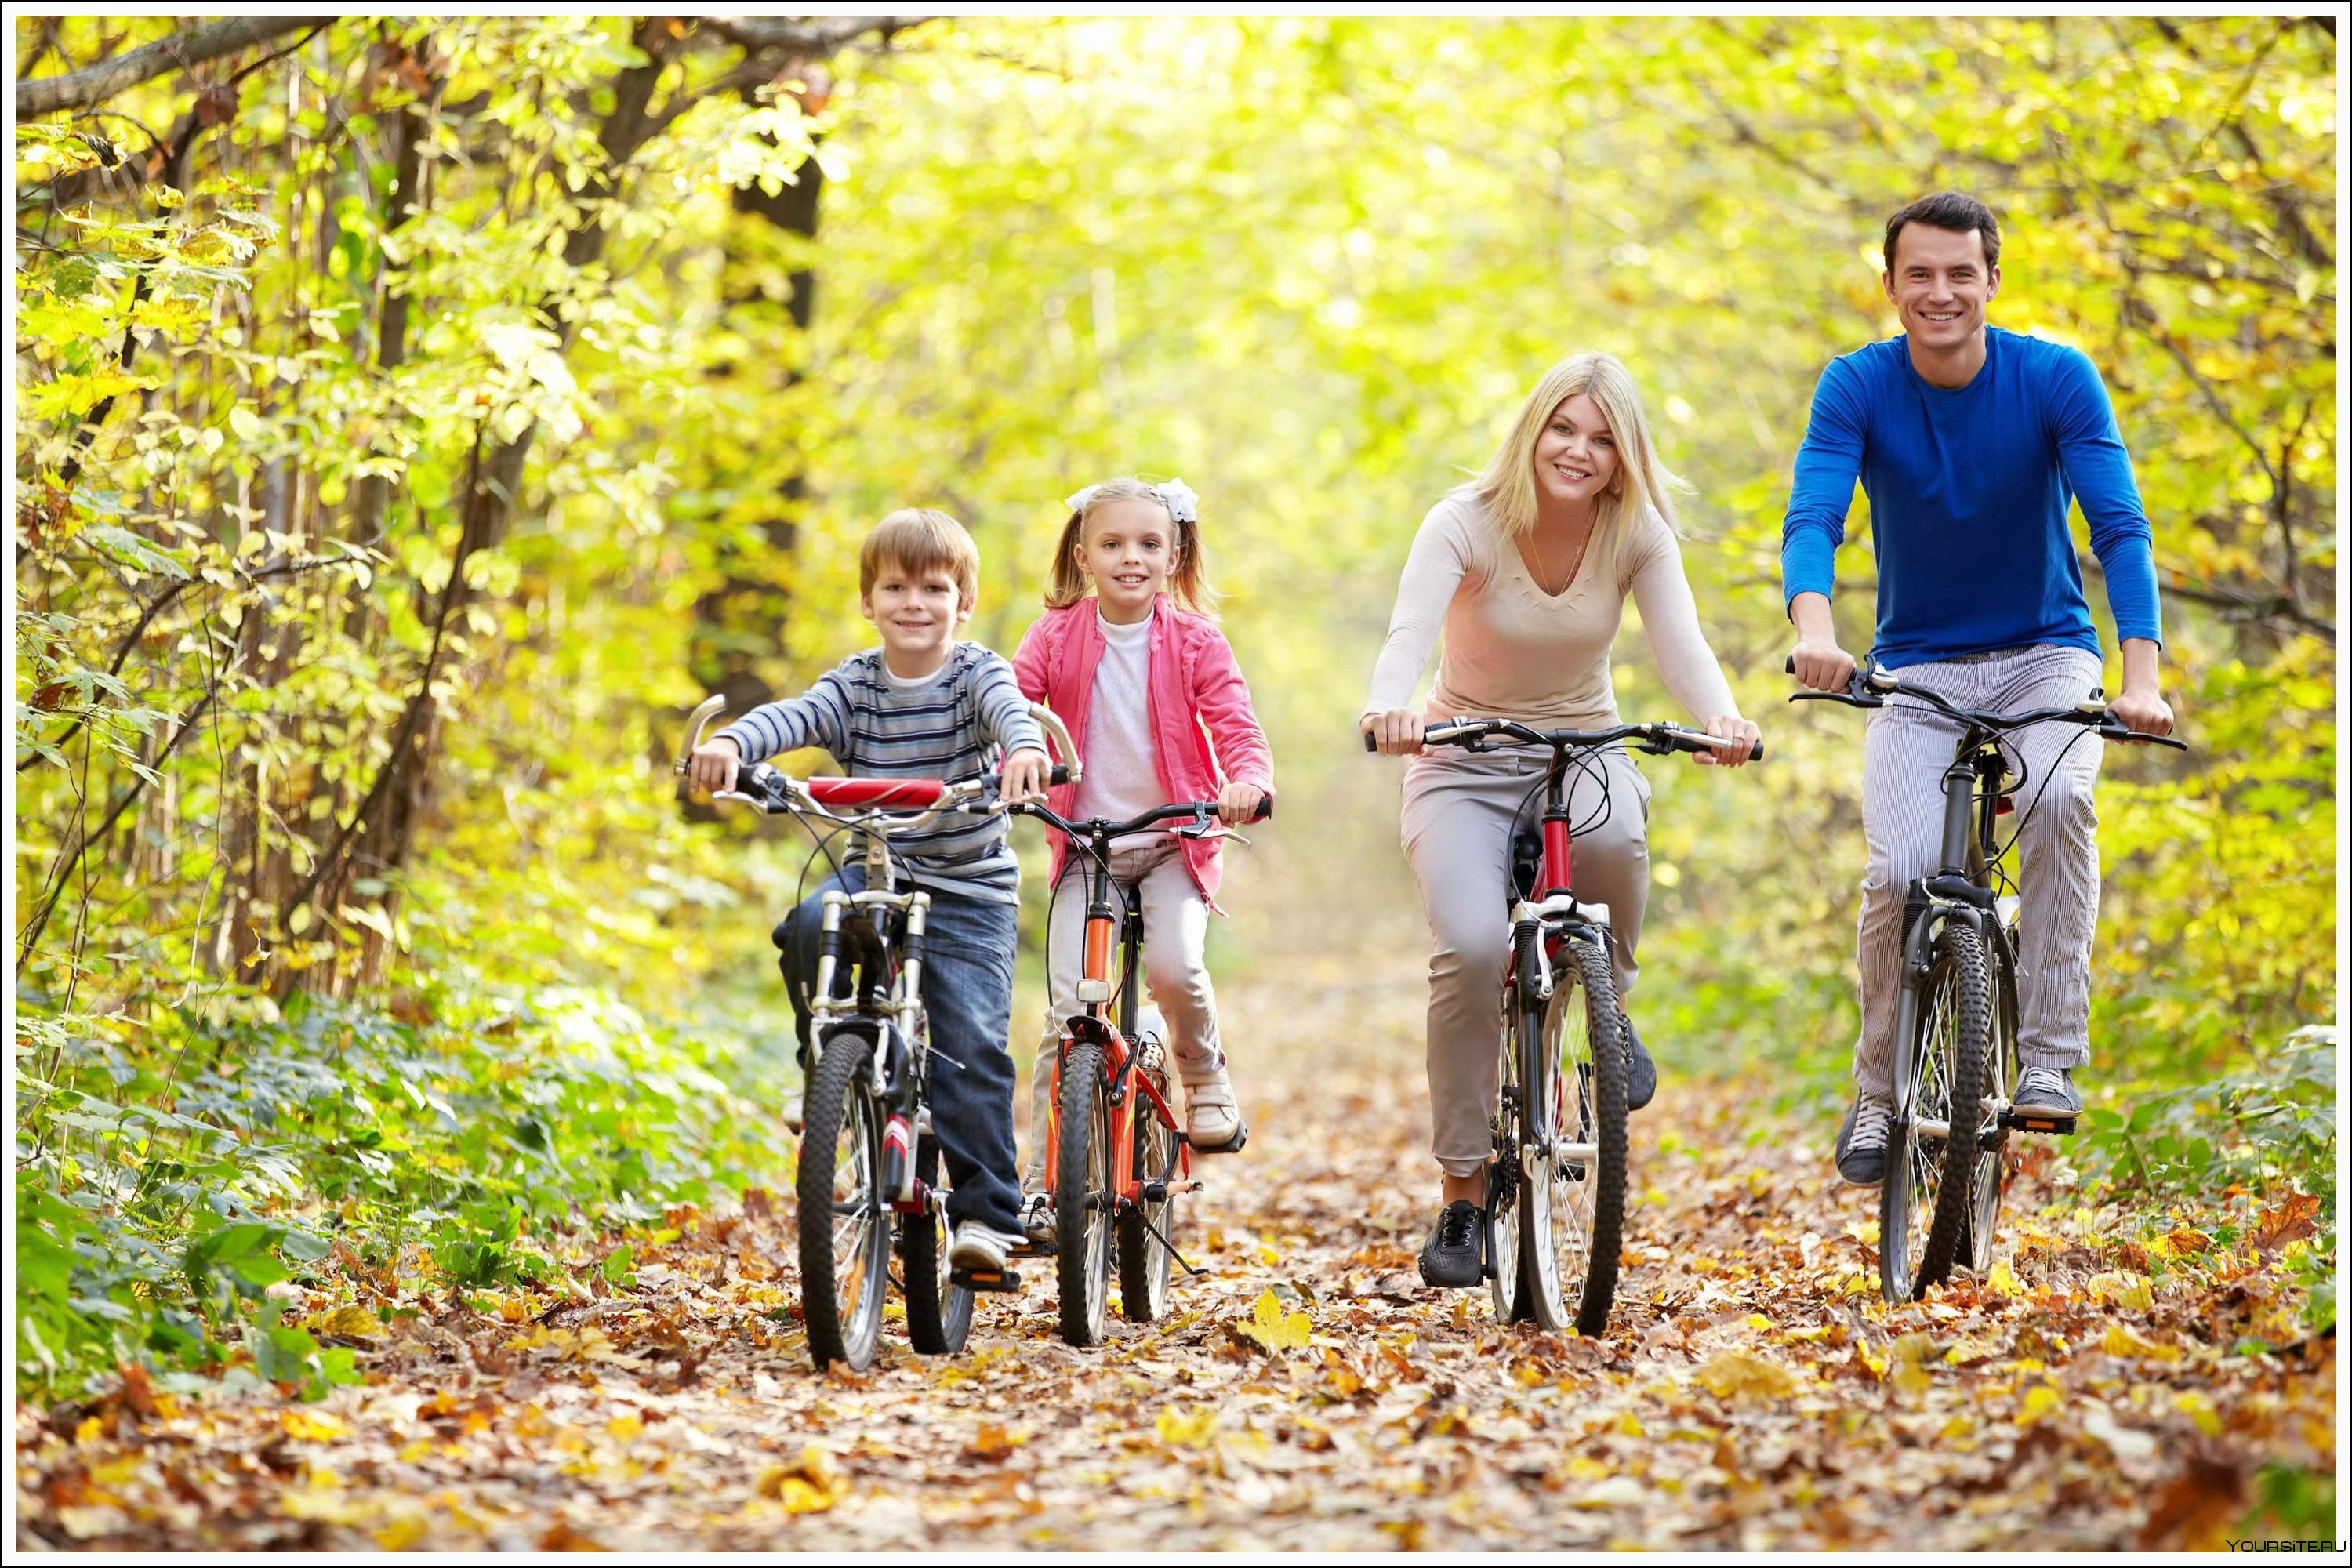 На свежем воздухе можно гулять. Прогулки на свежем воздухе. Семья на прогулке. Прогулка на природе. Семья на велосипедах.